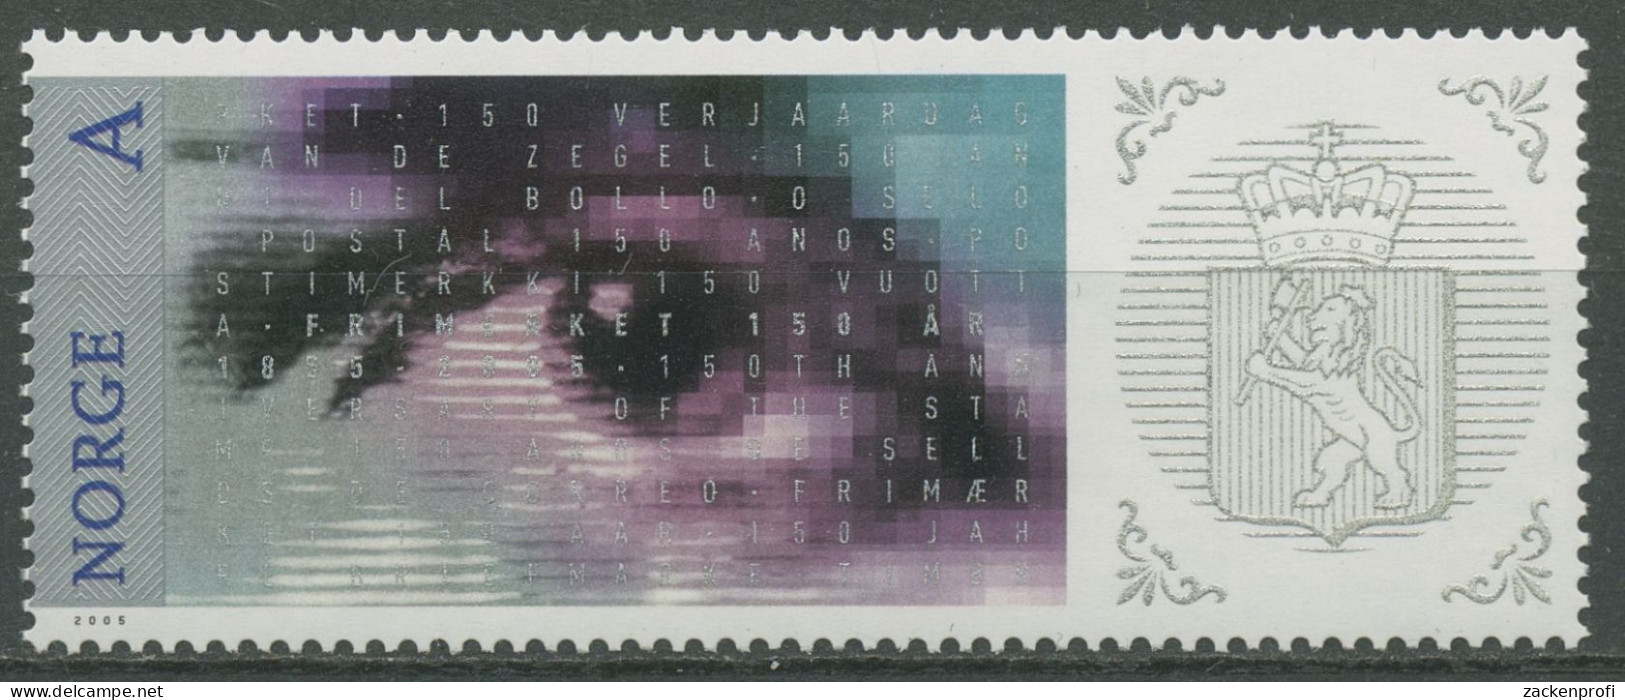 Norwegen 2005 Briefmarken Motiv MiNr.1, Auge 1554 Postfrisch - Unused Stamps